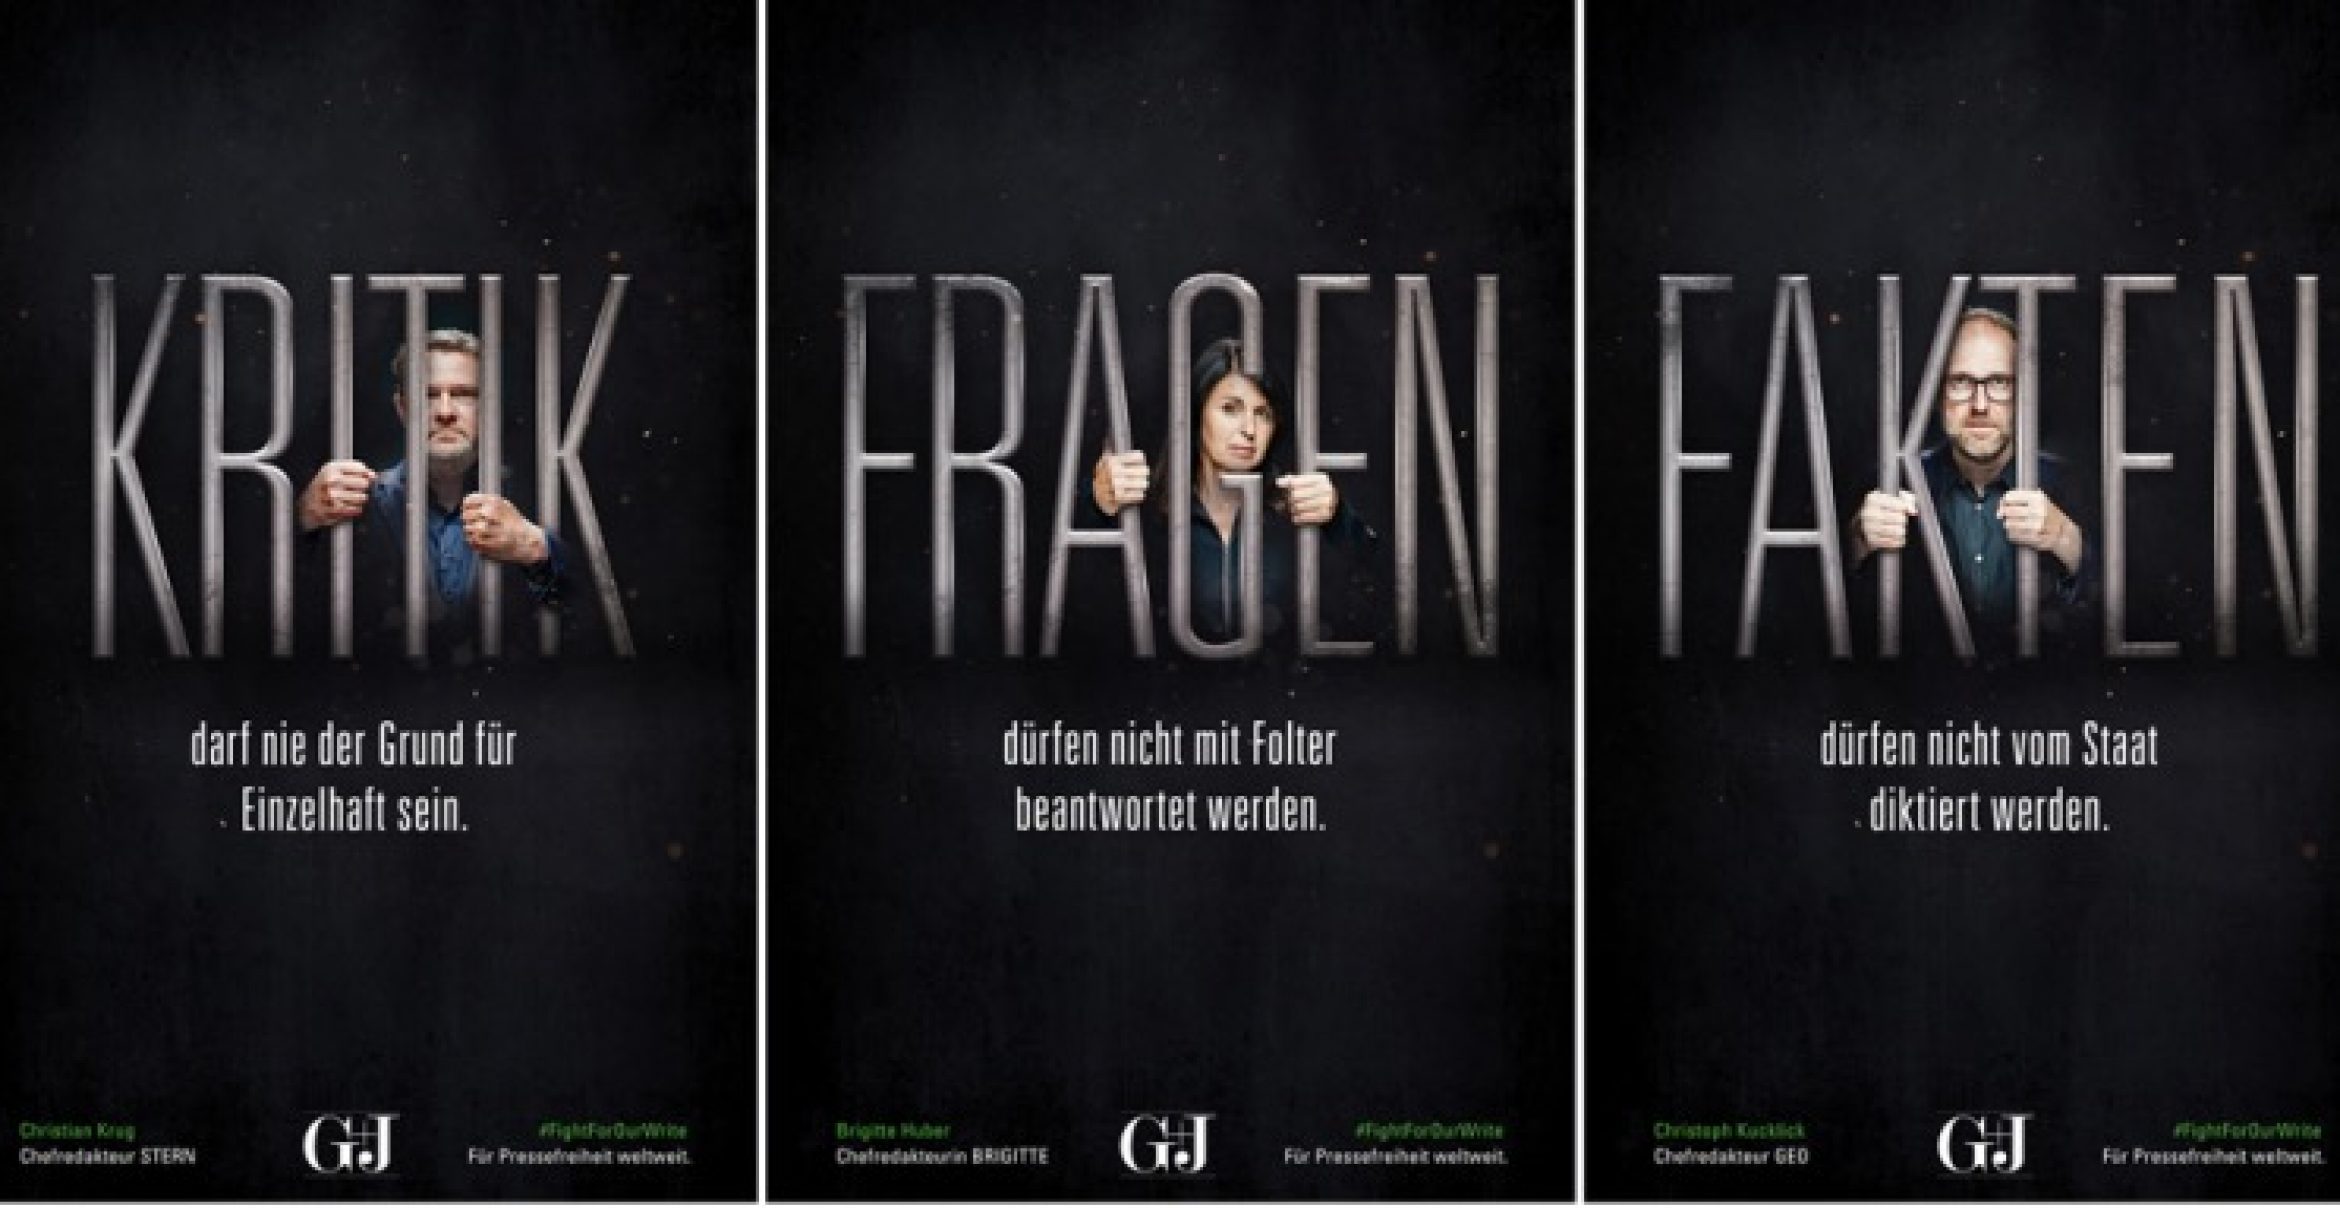 #FightForOurWrite: Gruner + Jahr startet Kampagne für Pressefreiheit zum G20-Gipfel